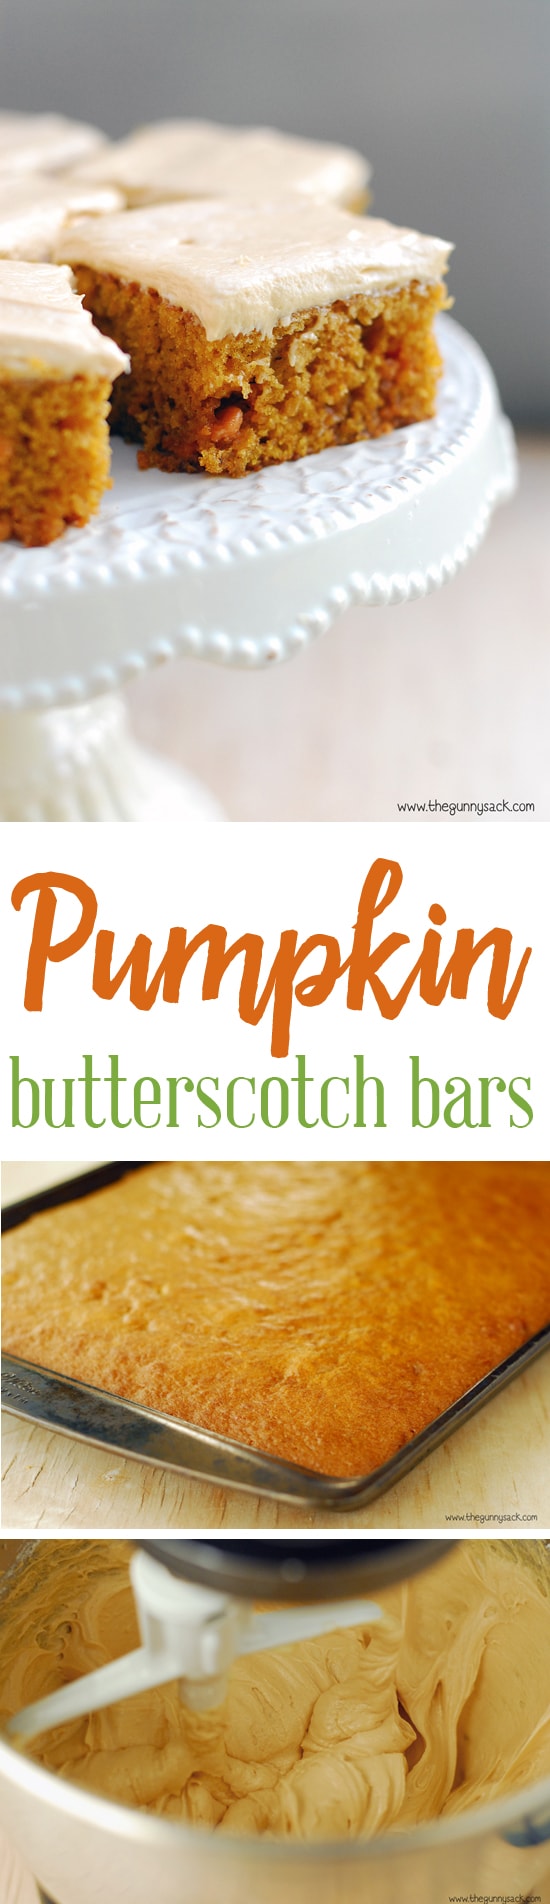 Pumpkin Butterscotch Bars